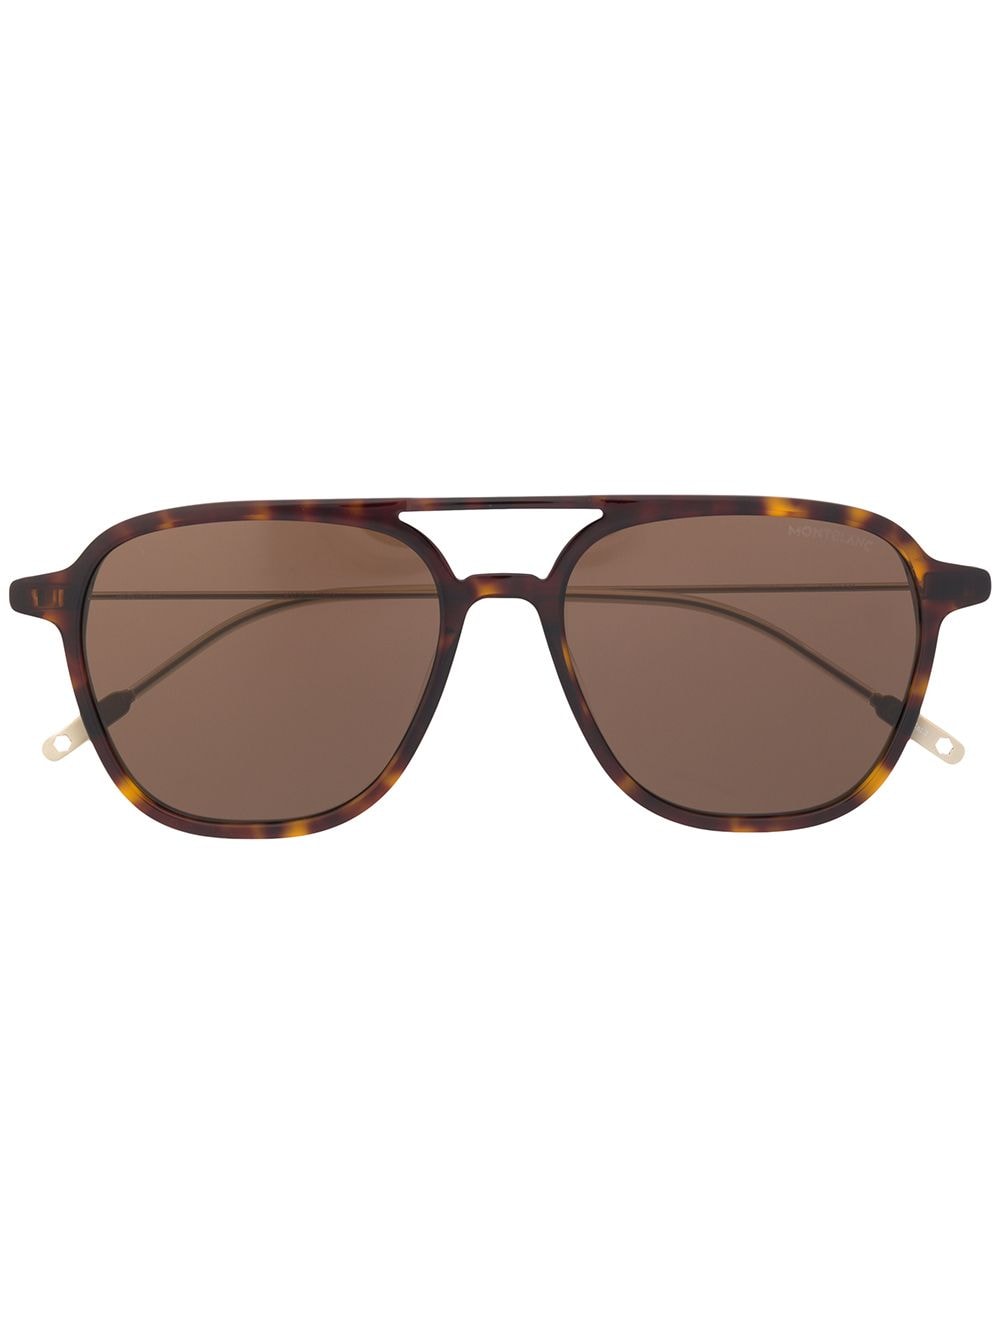 Montblanc Millennials sunglasses - Brown von Montblanc